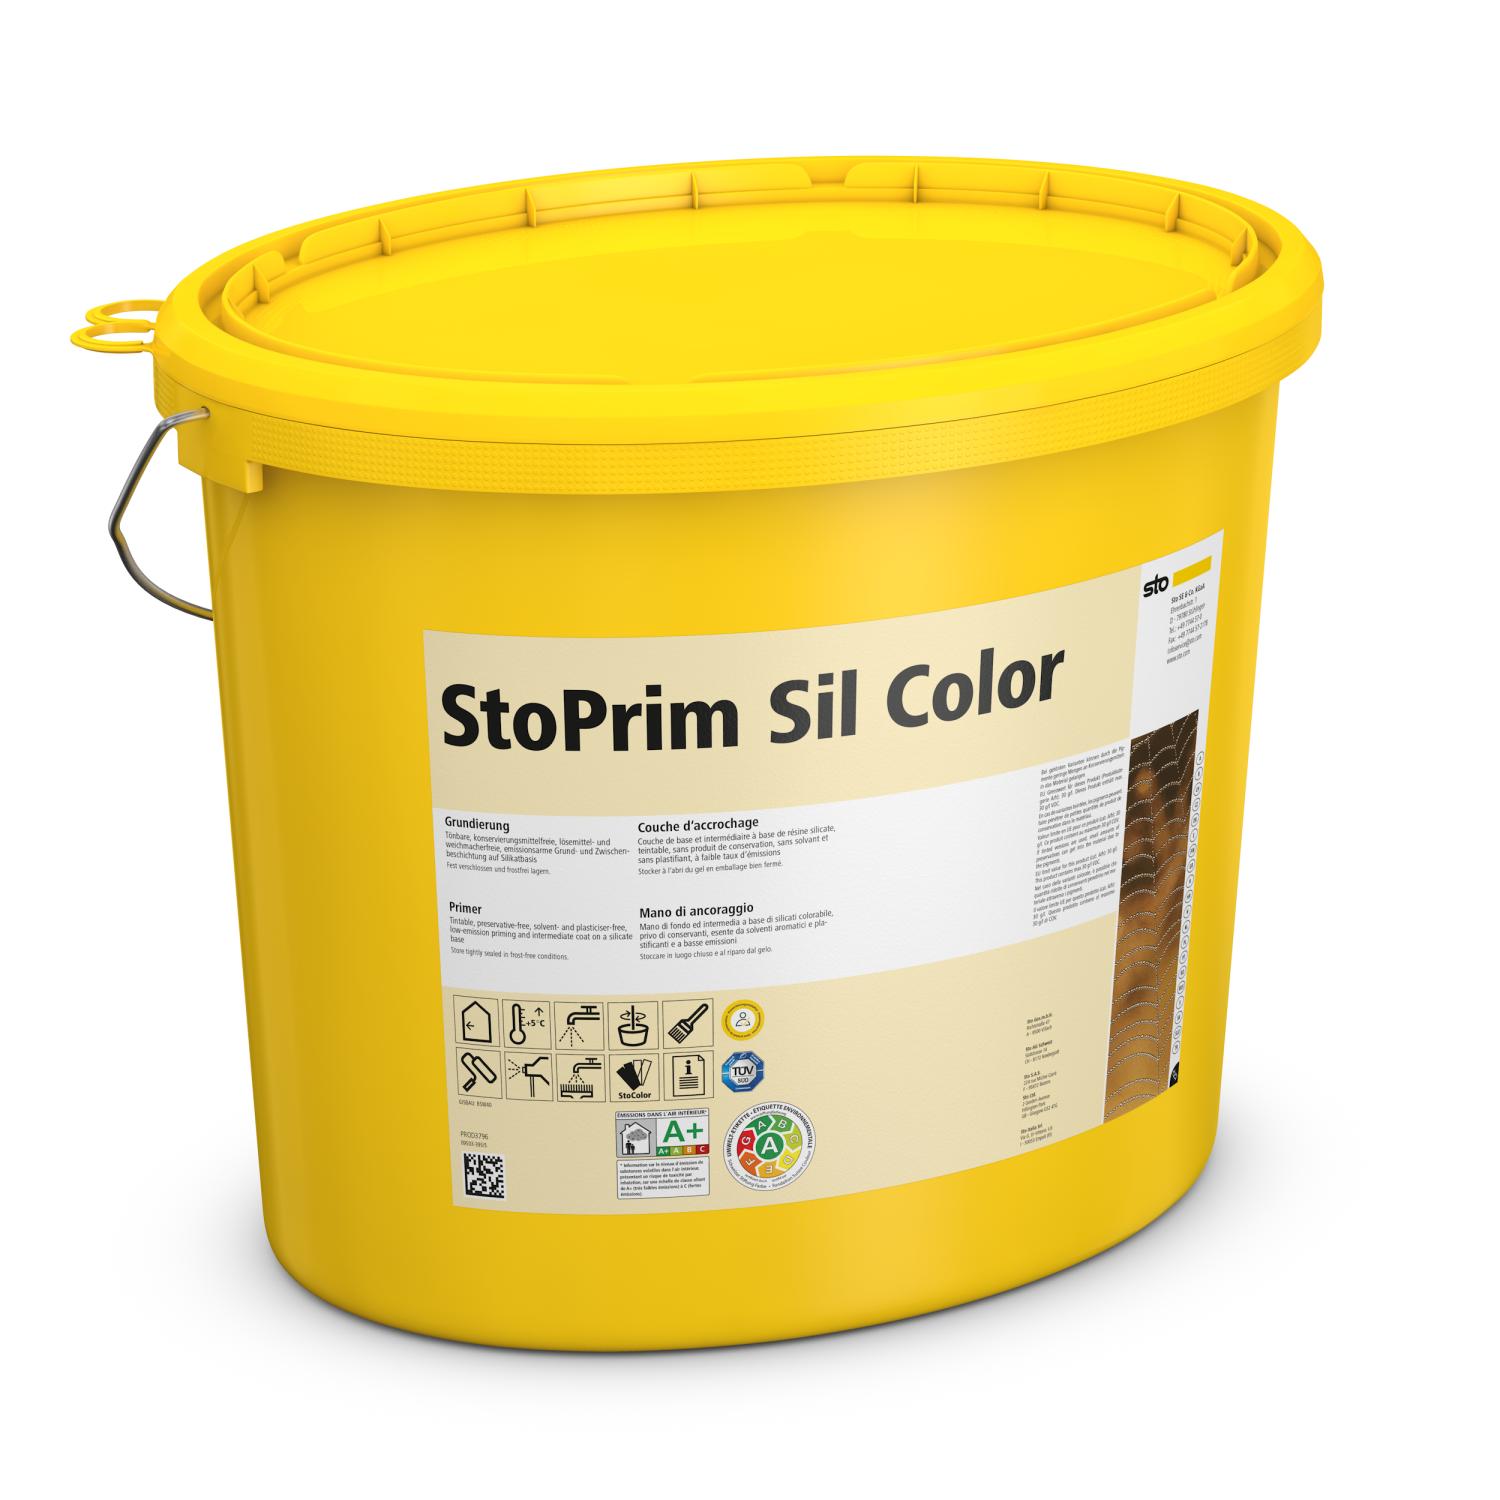 StoPrim Sil Color